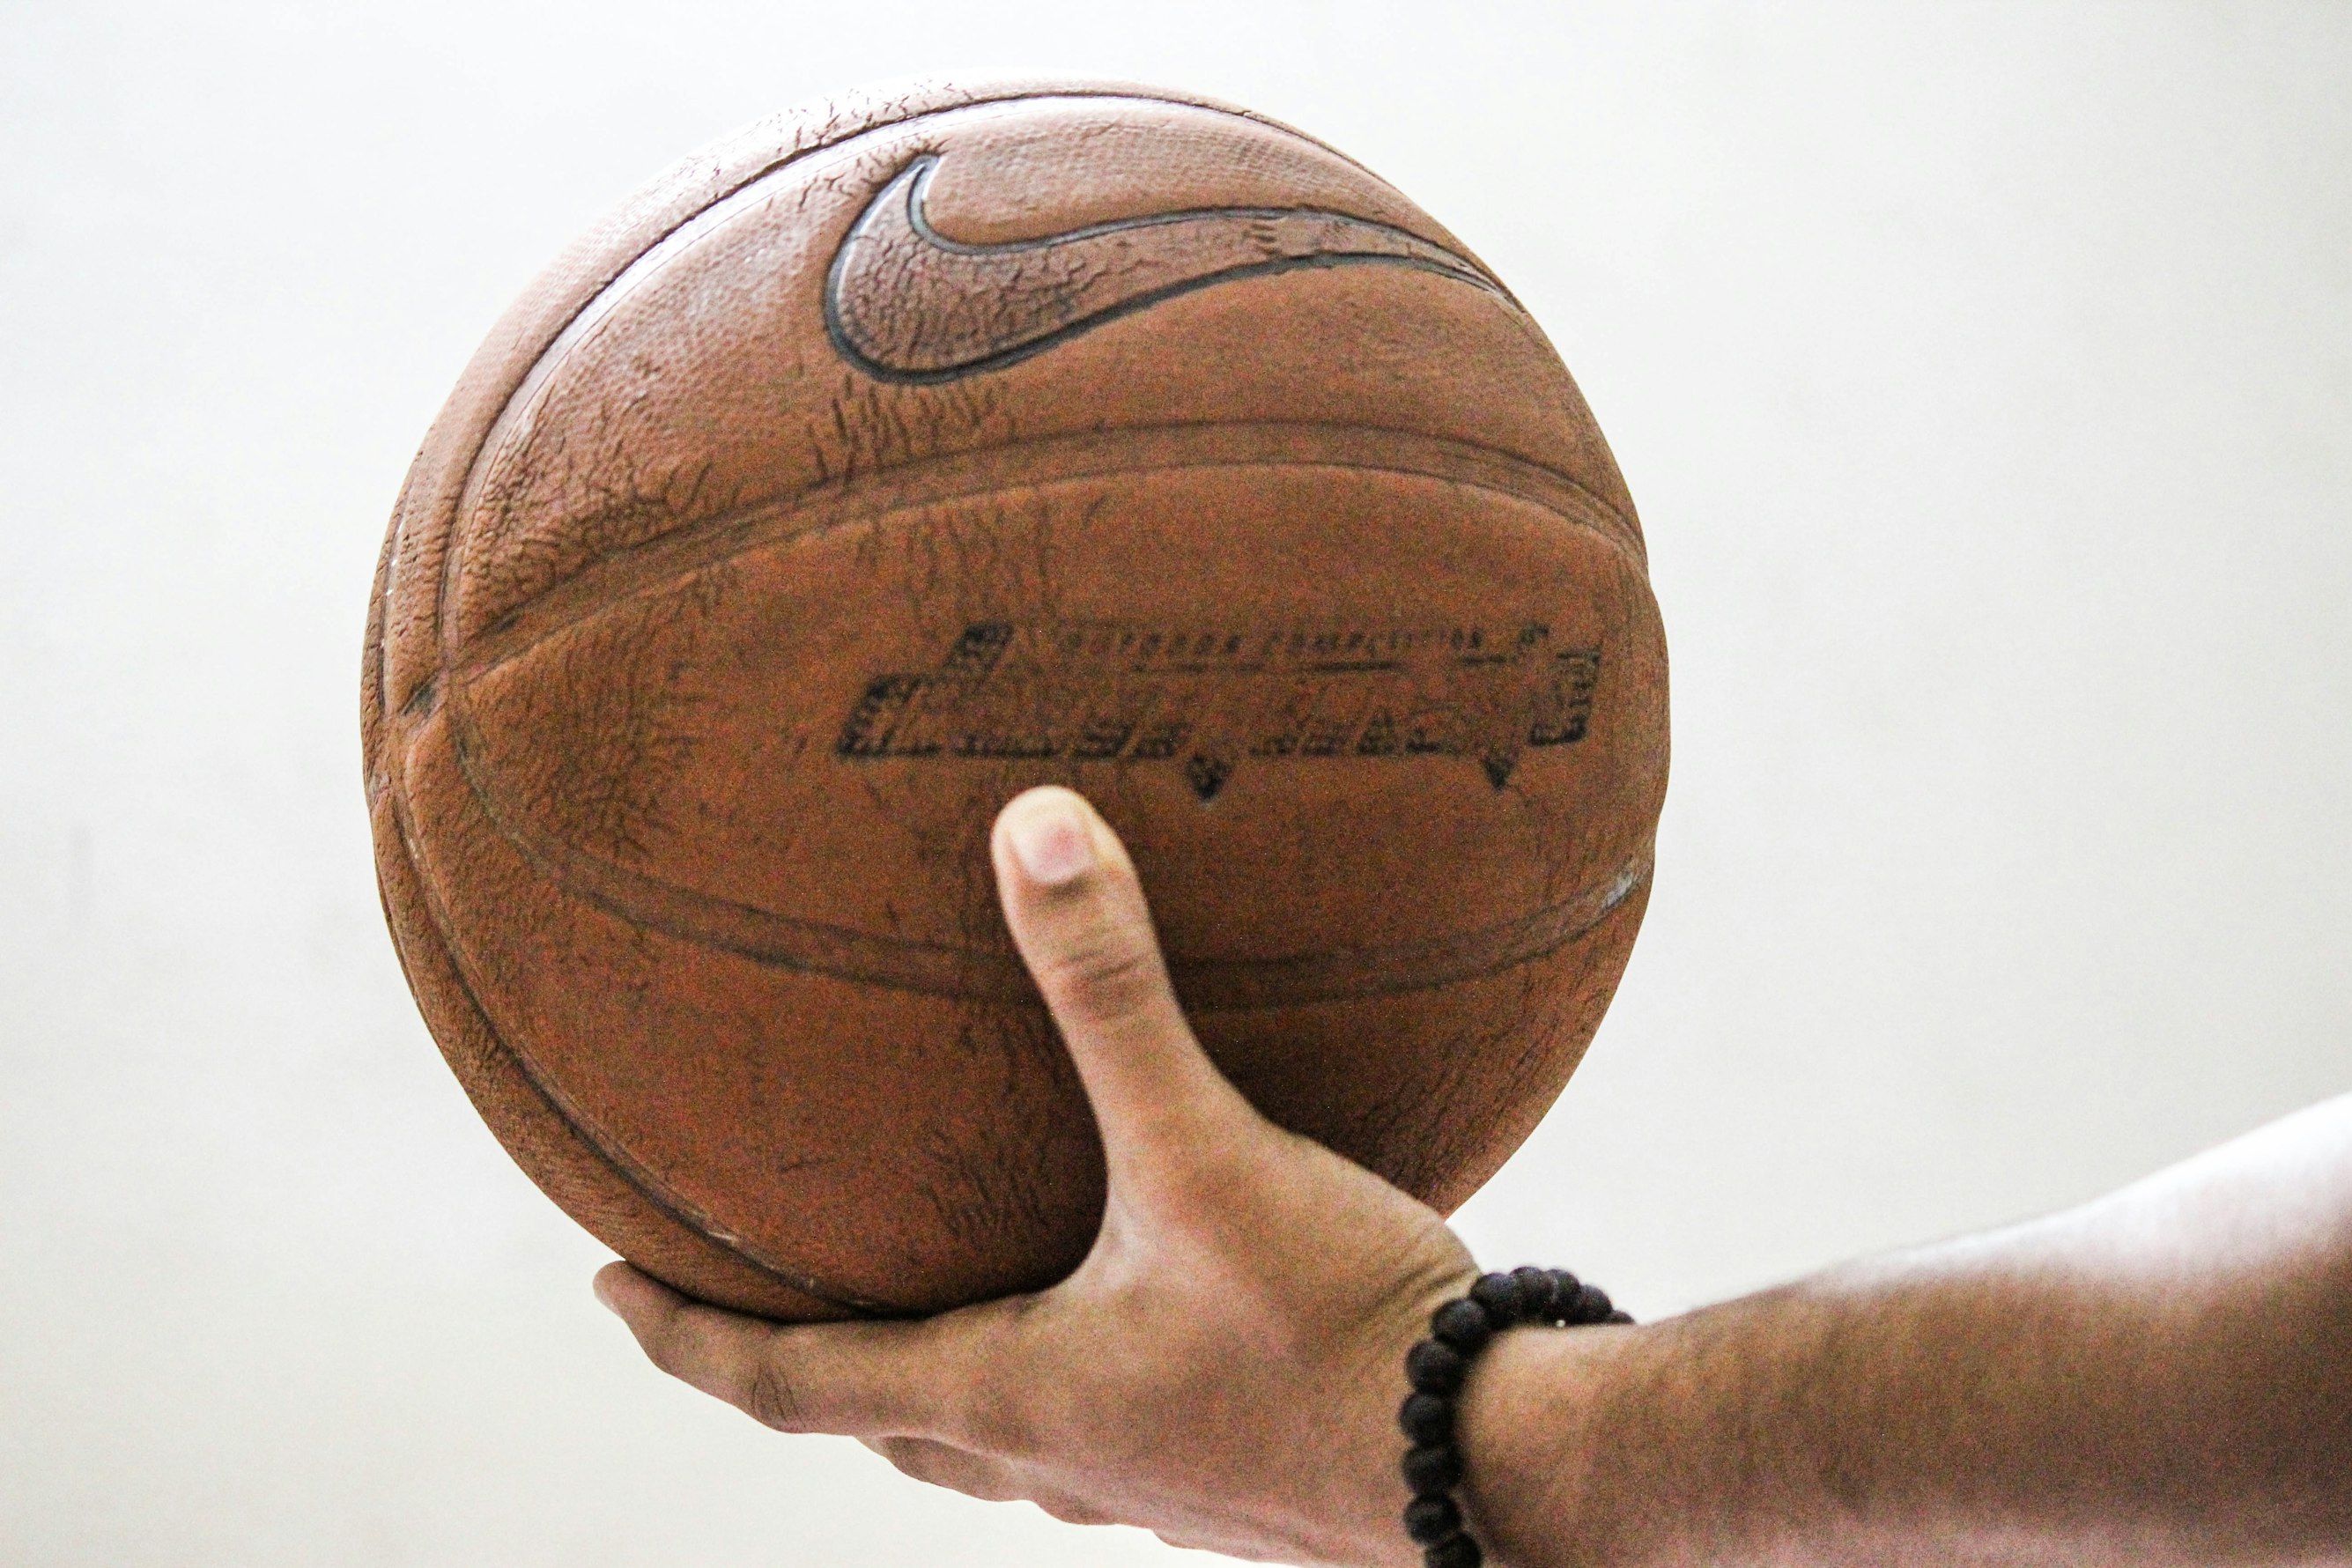 Técnico con balón de baloncesto en la mano antes de lanzarlo.  Comienza el torneo.